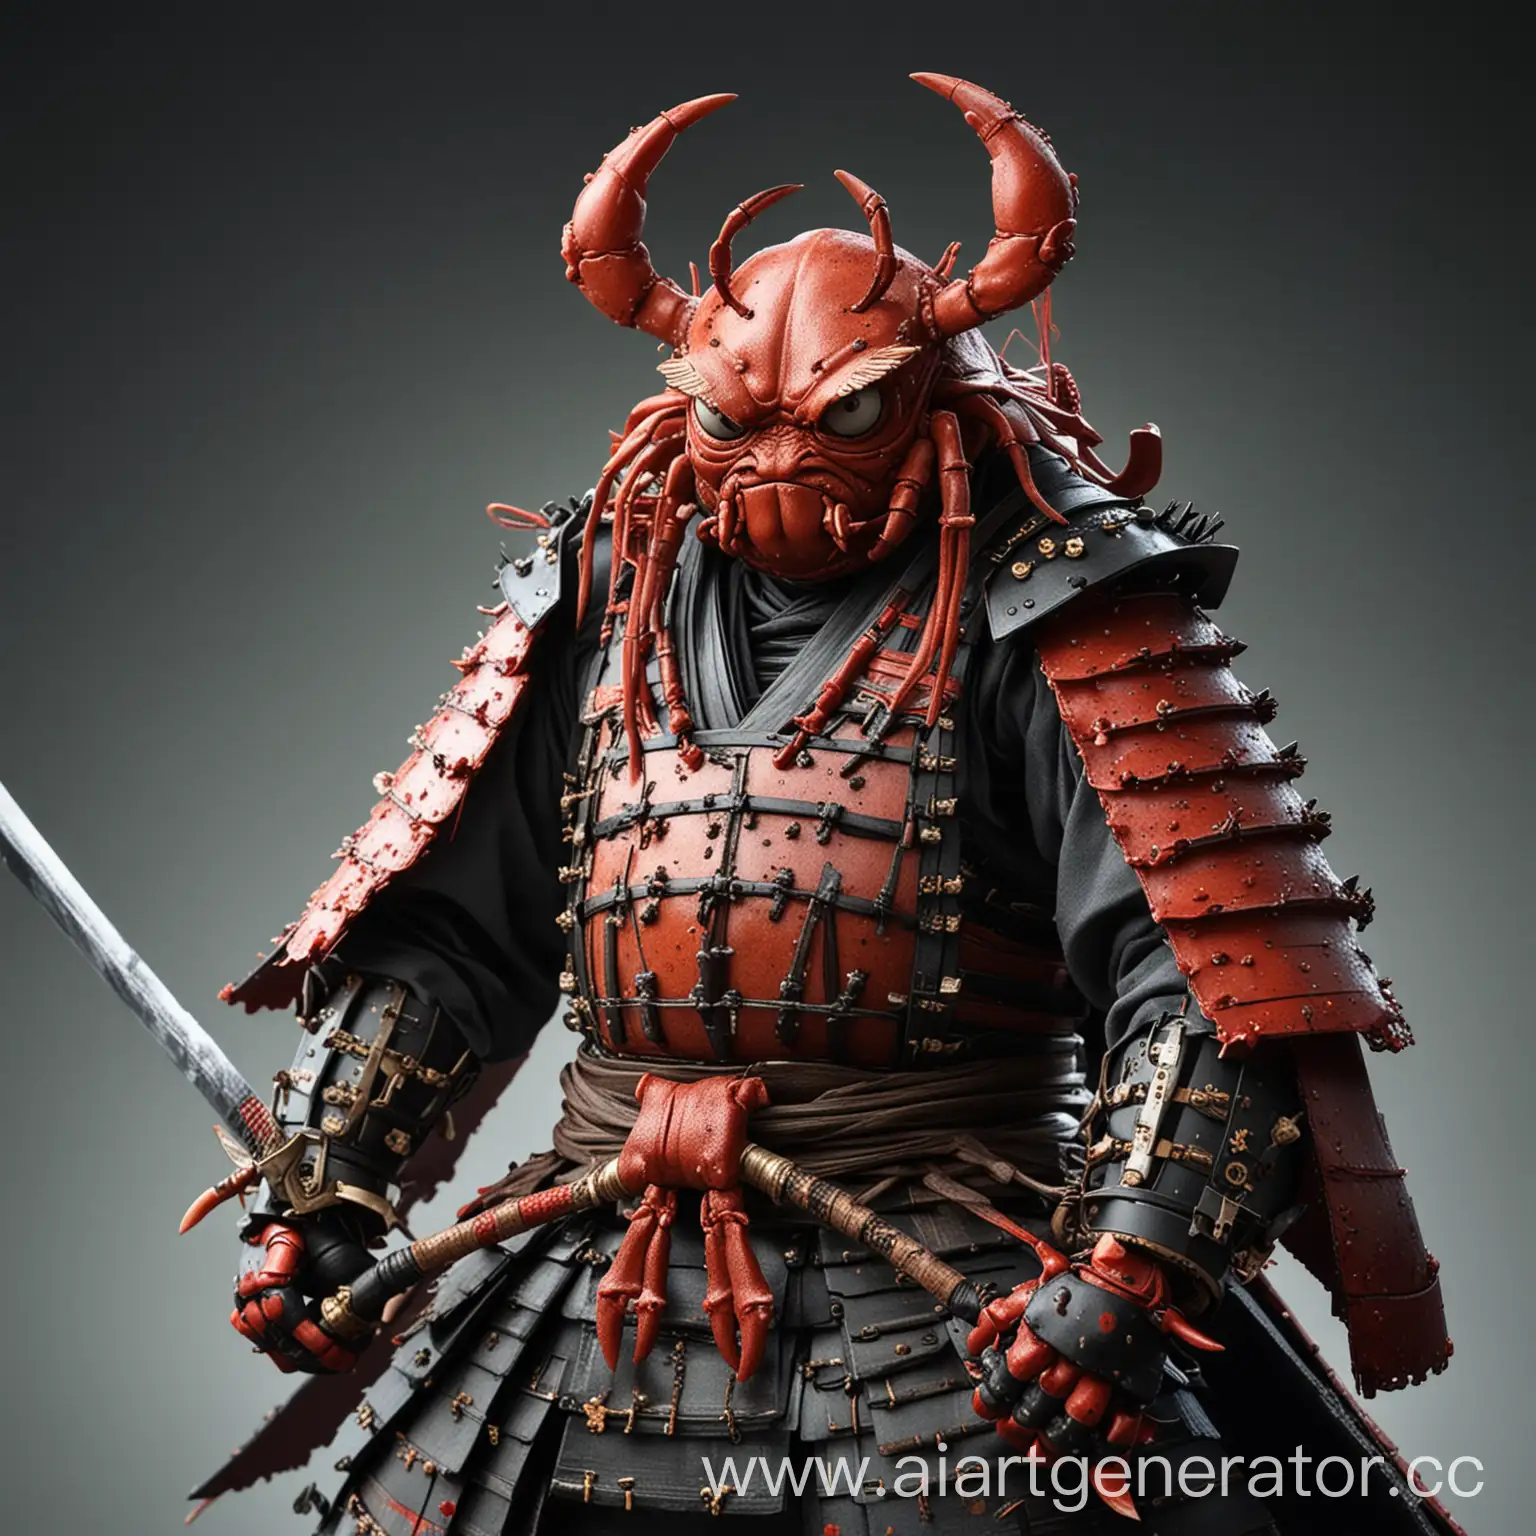 Samurai-Crab-Warrior-with-Katana-Sword